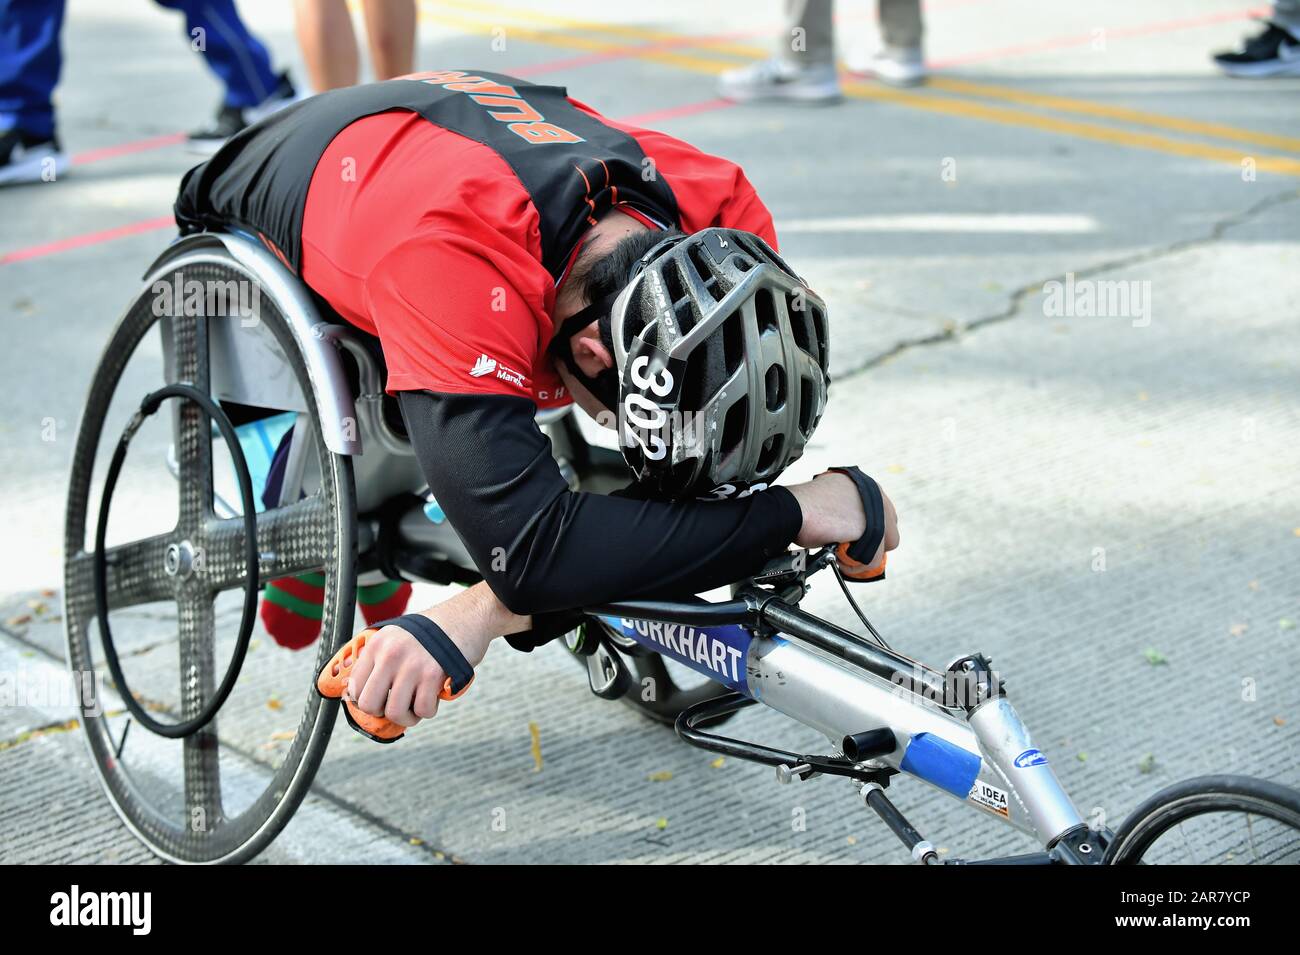 Chicago, Illinois, États-Unis. L'athlète en fauteuil roulant épuisé Ethan Burkhart des États-Unis repose juste après la ligne d'arrivée au Marathon de Chicago de 2019 Banque D'Images